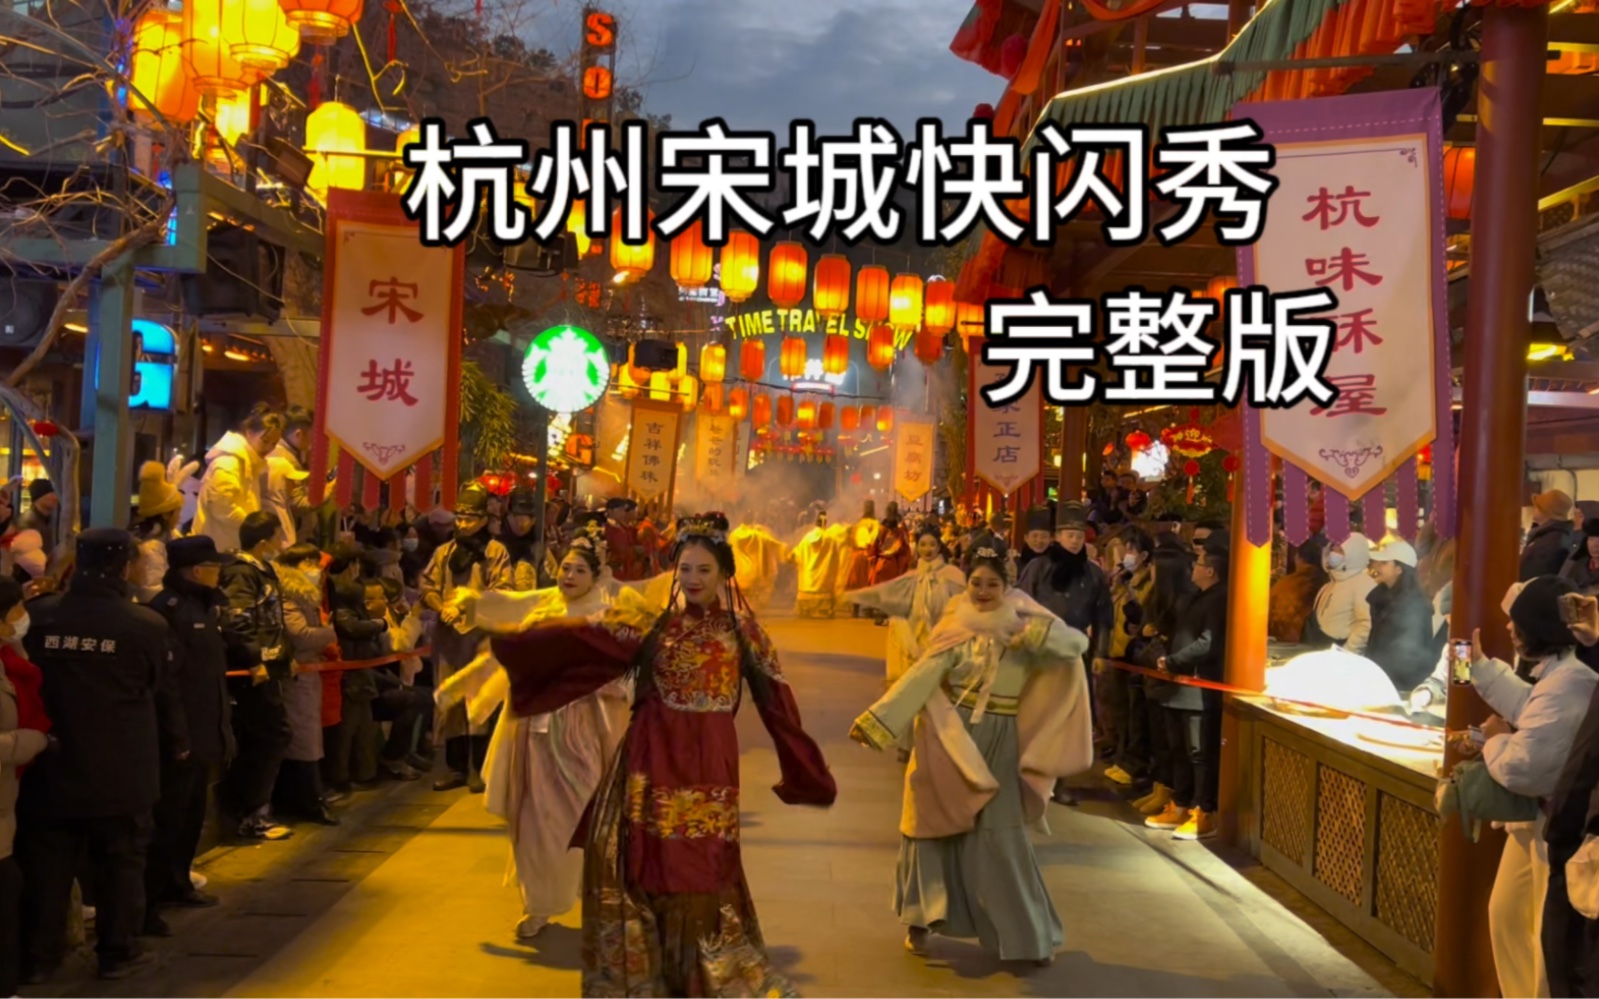 杭州宋城演出节目单图片